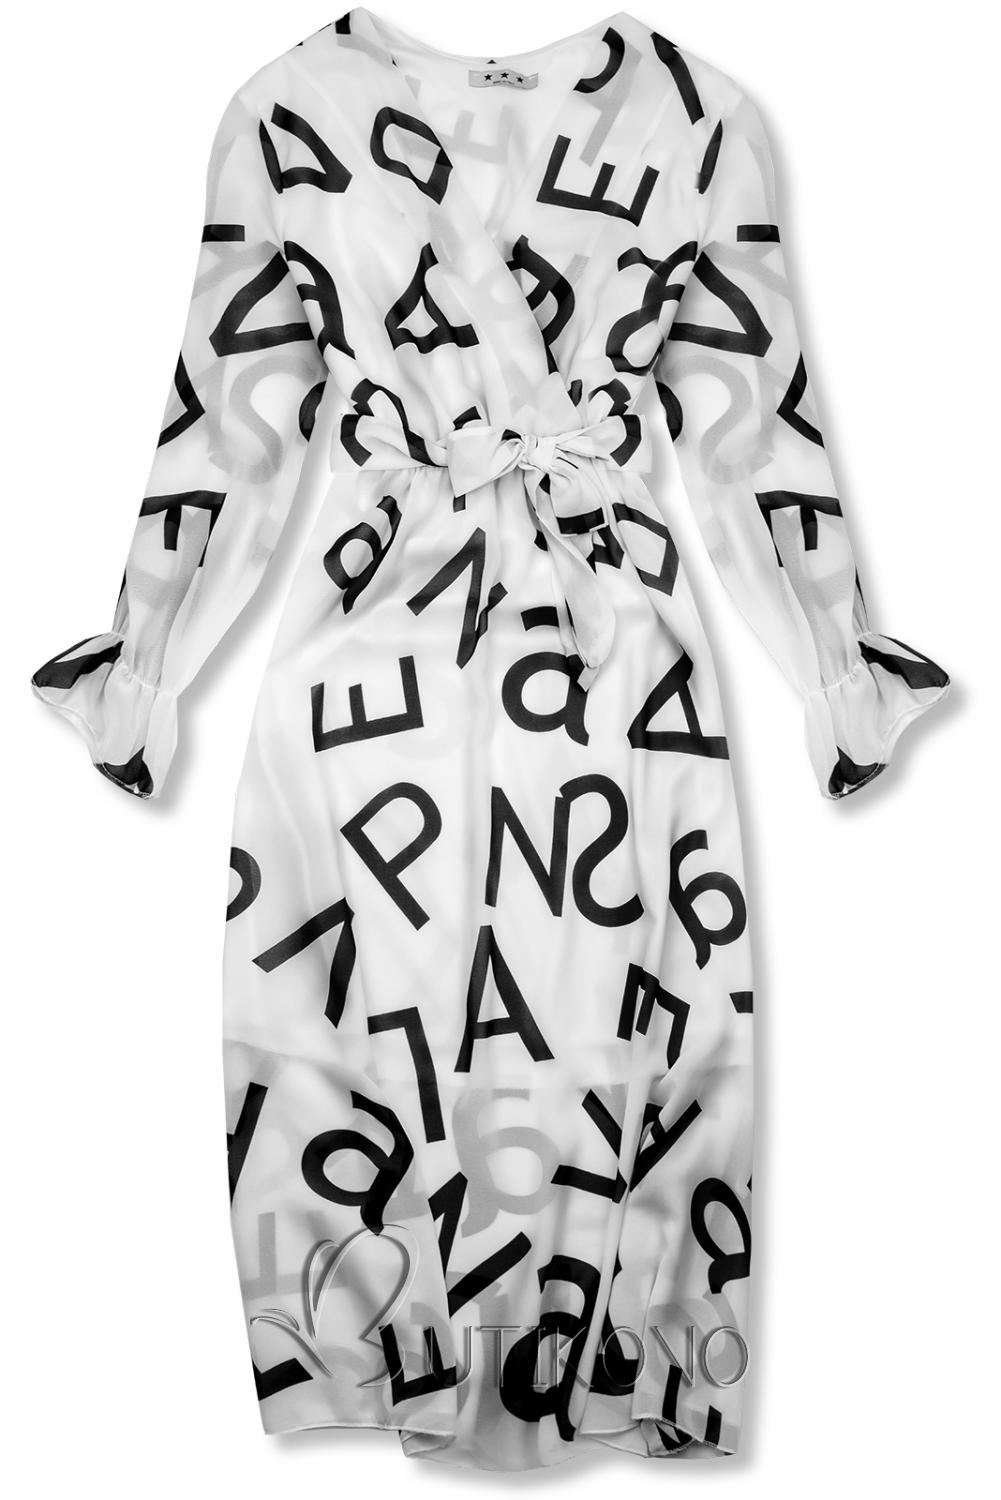 Bílé midi šaty s potiskem písmen